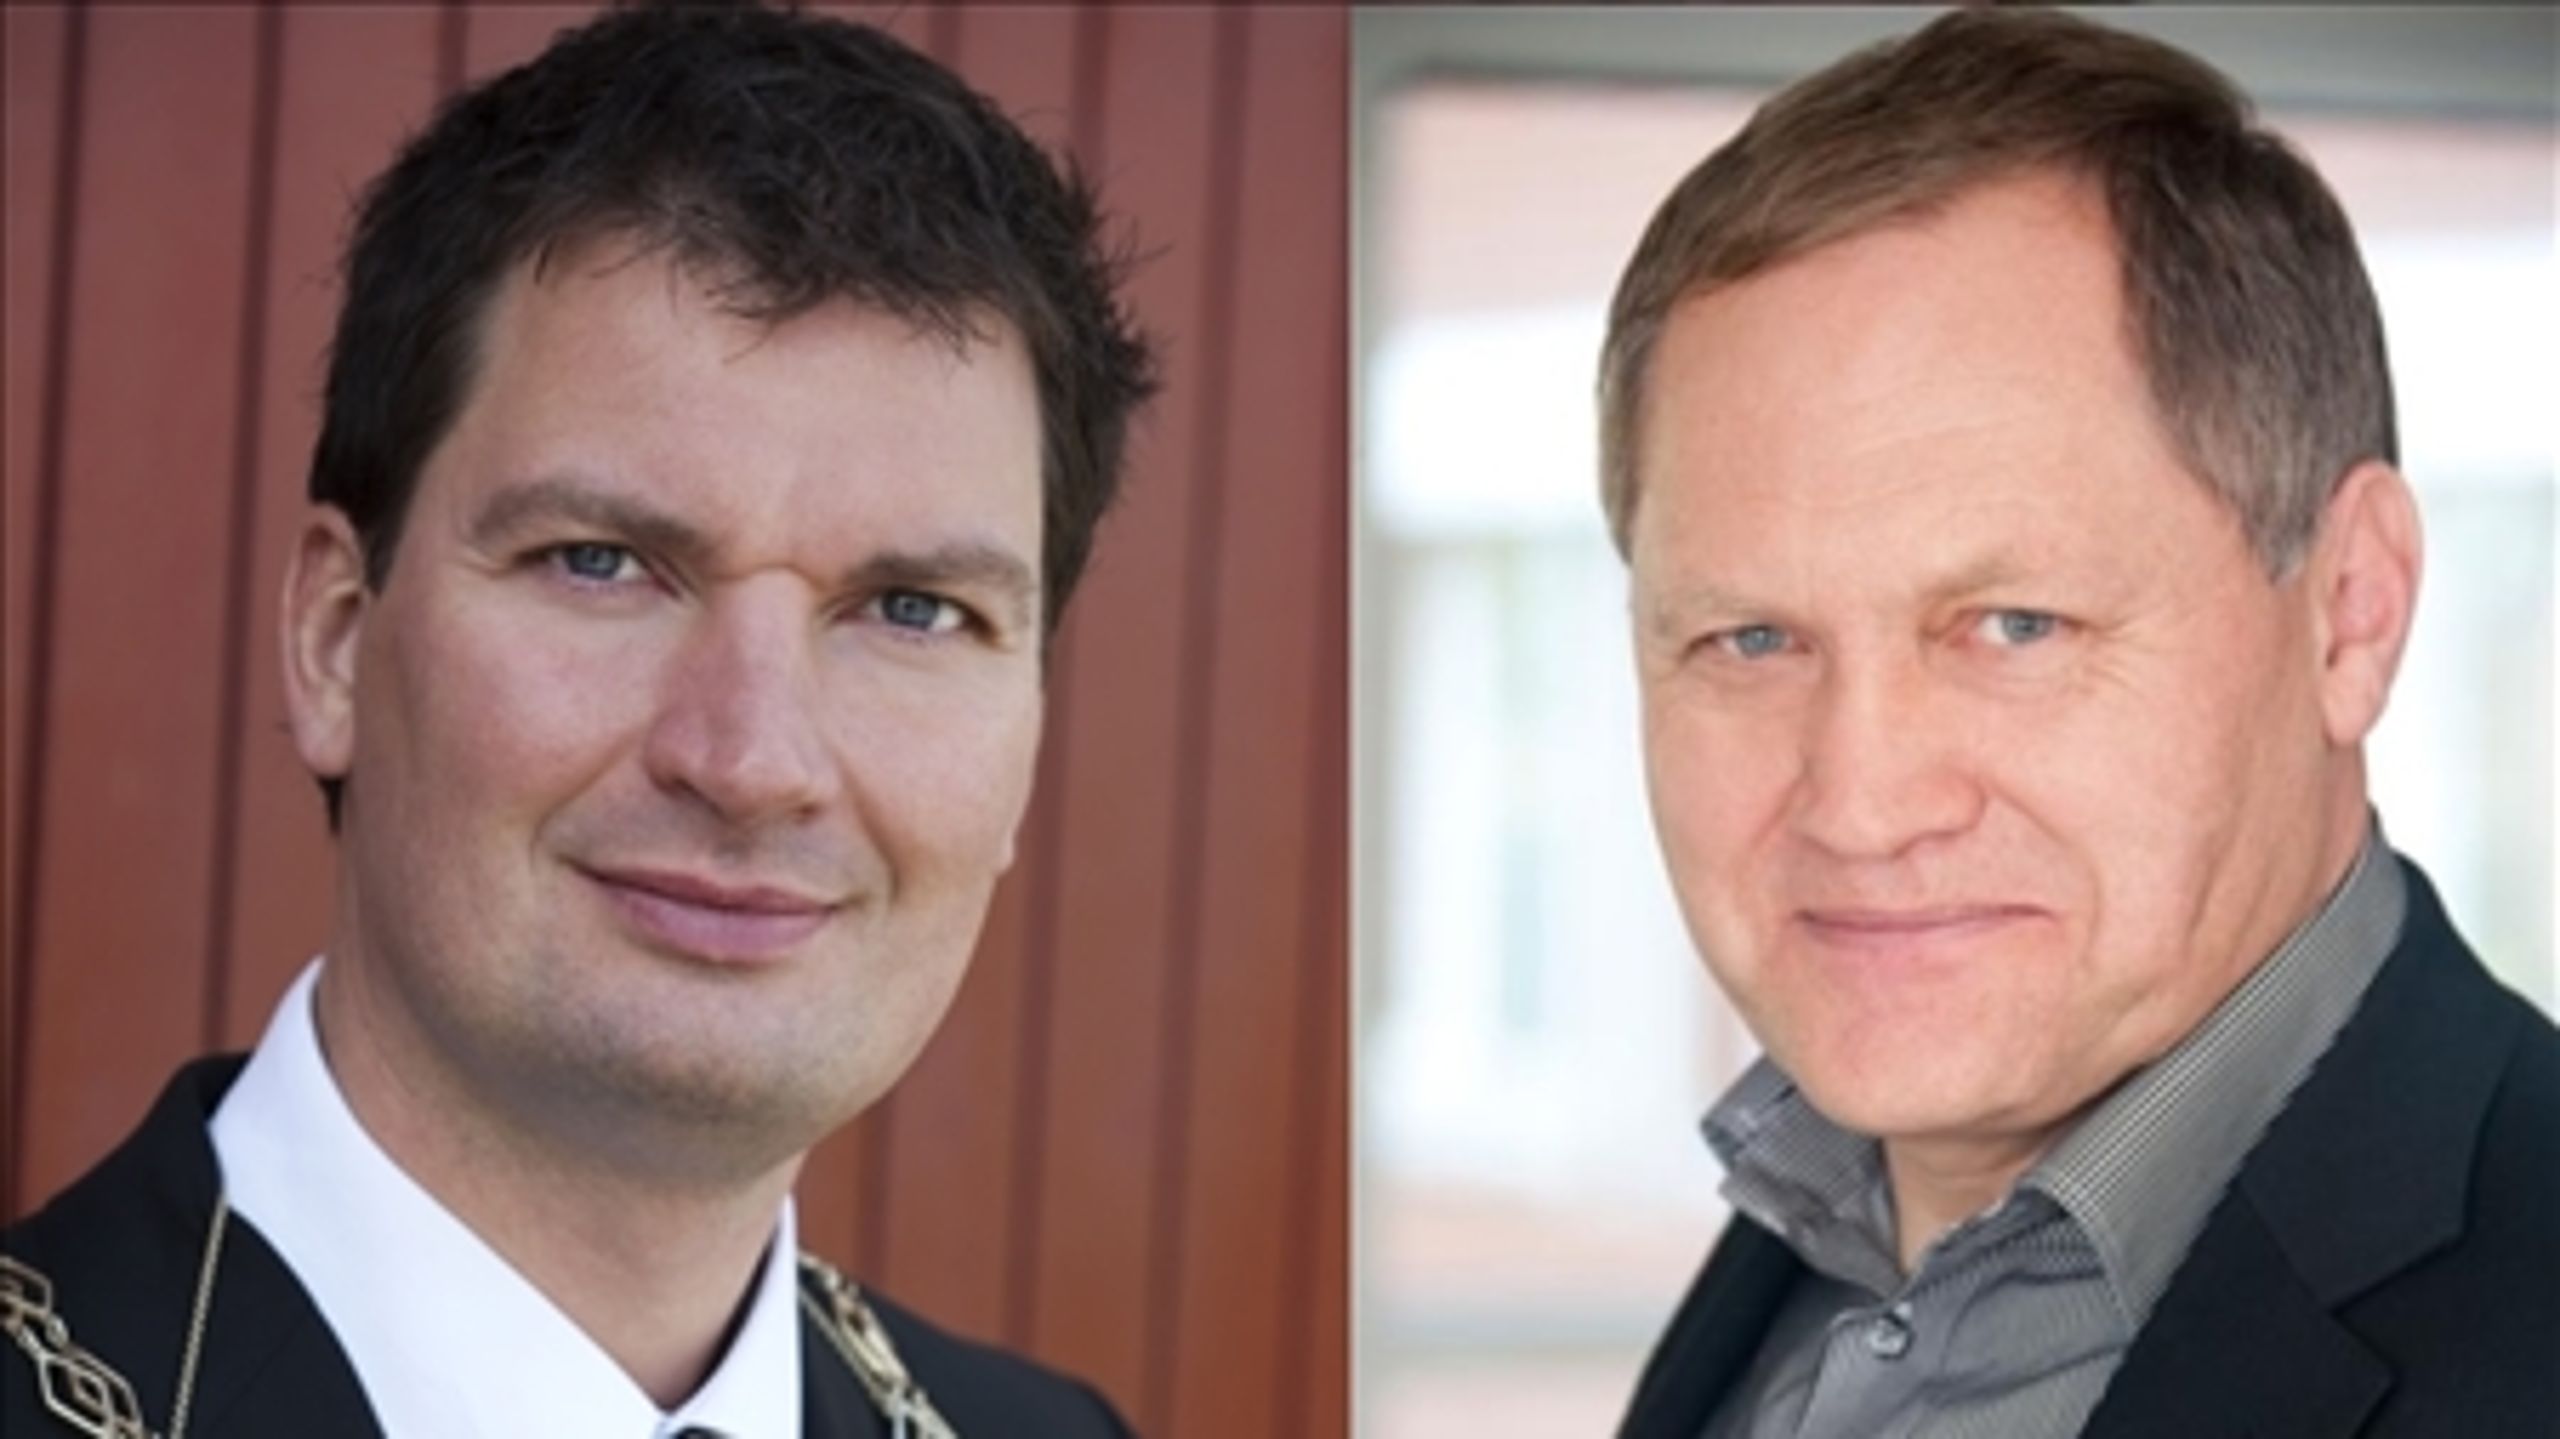 Vallensbæks borgmester Henrik Rasmussen er anklaget for magtmisbrug og nepotisme. Medlemmer af økonomiudvalget forventer, at KL's undersøgelse af anklagerne giver grund til kritik af borgmesteren.